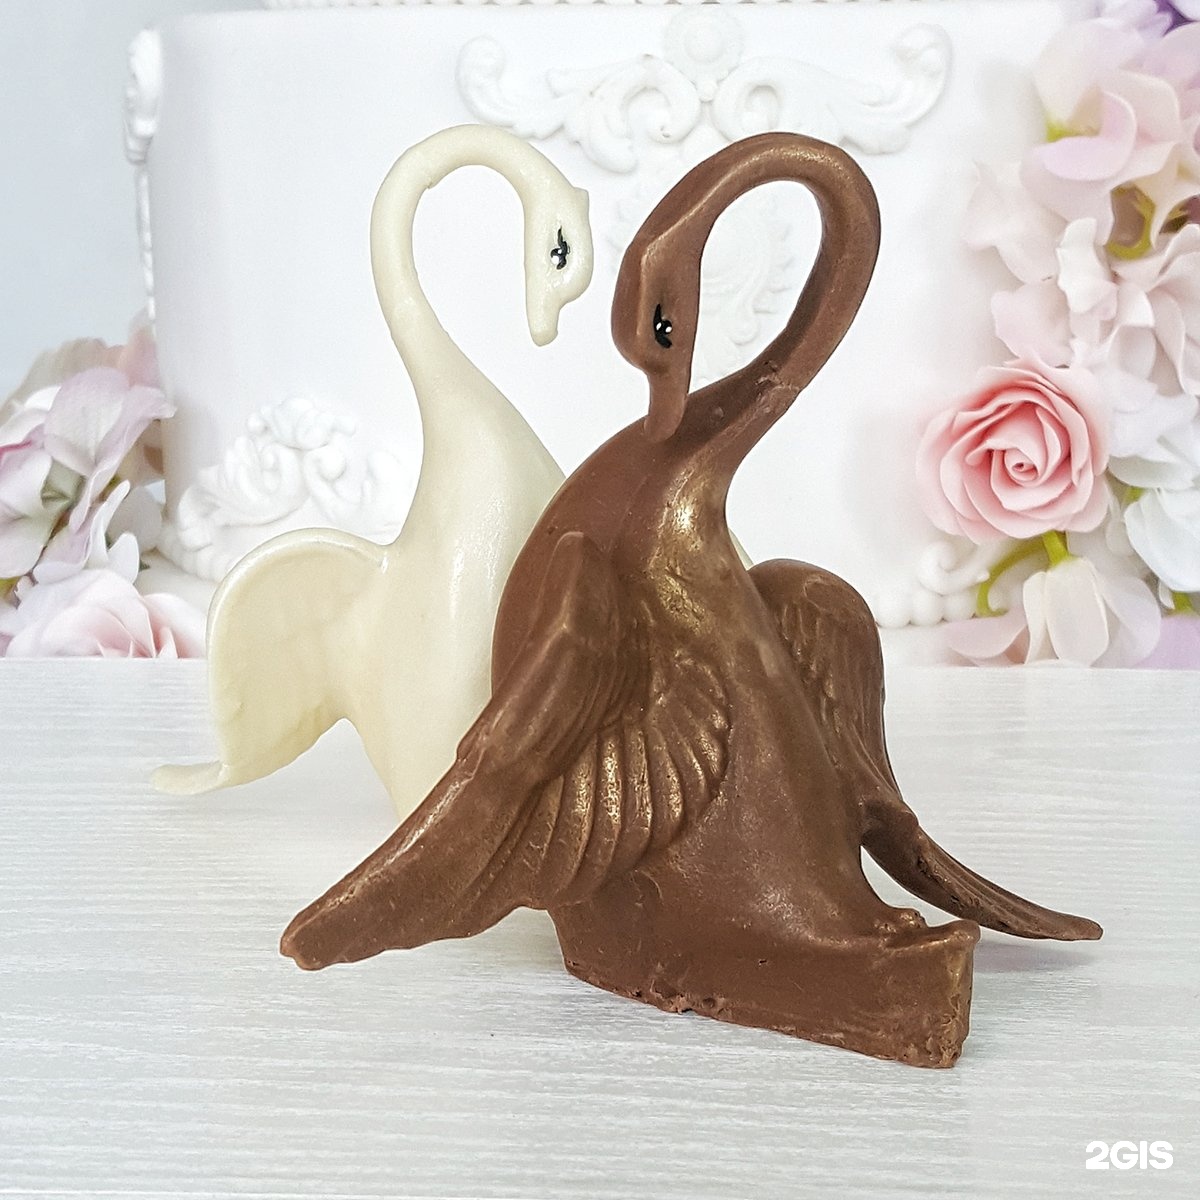 Фигурка лебедя из шоколада